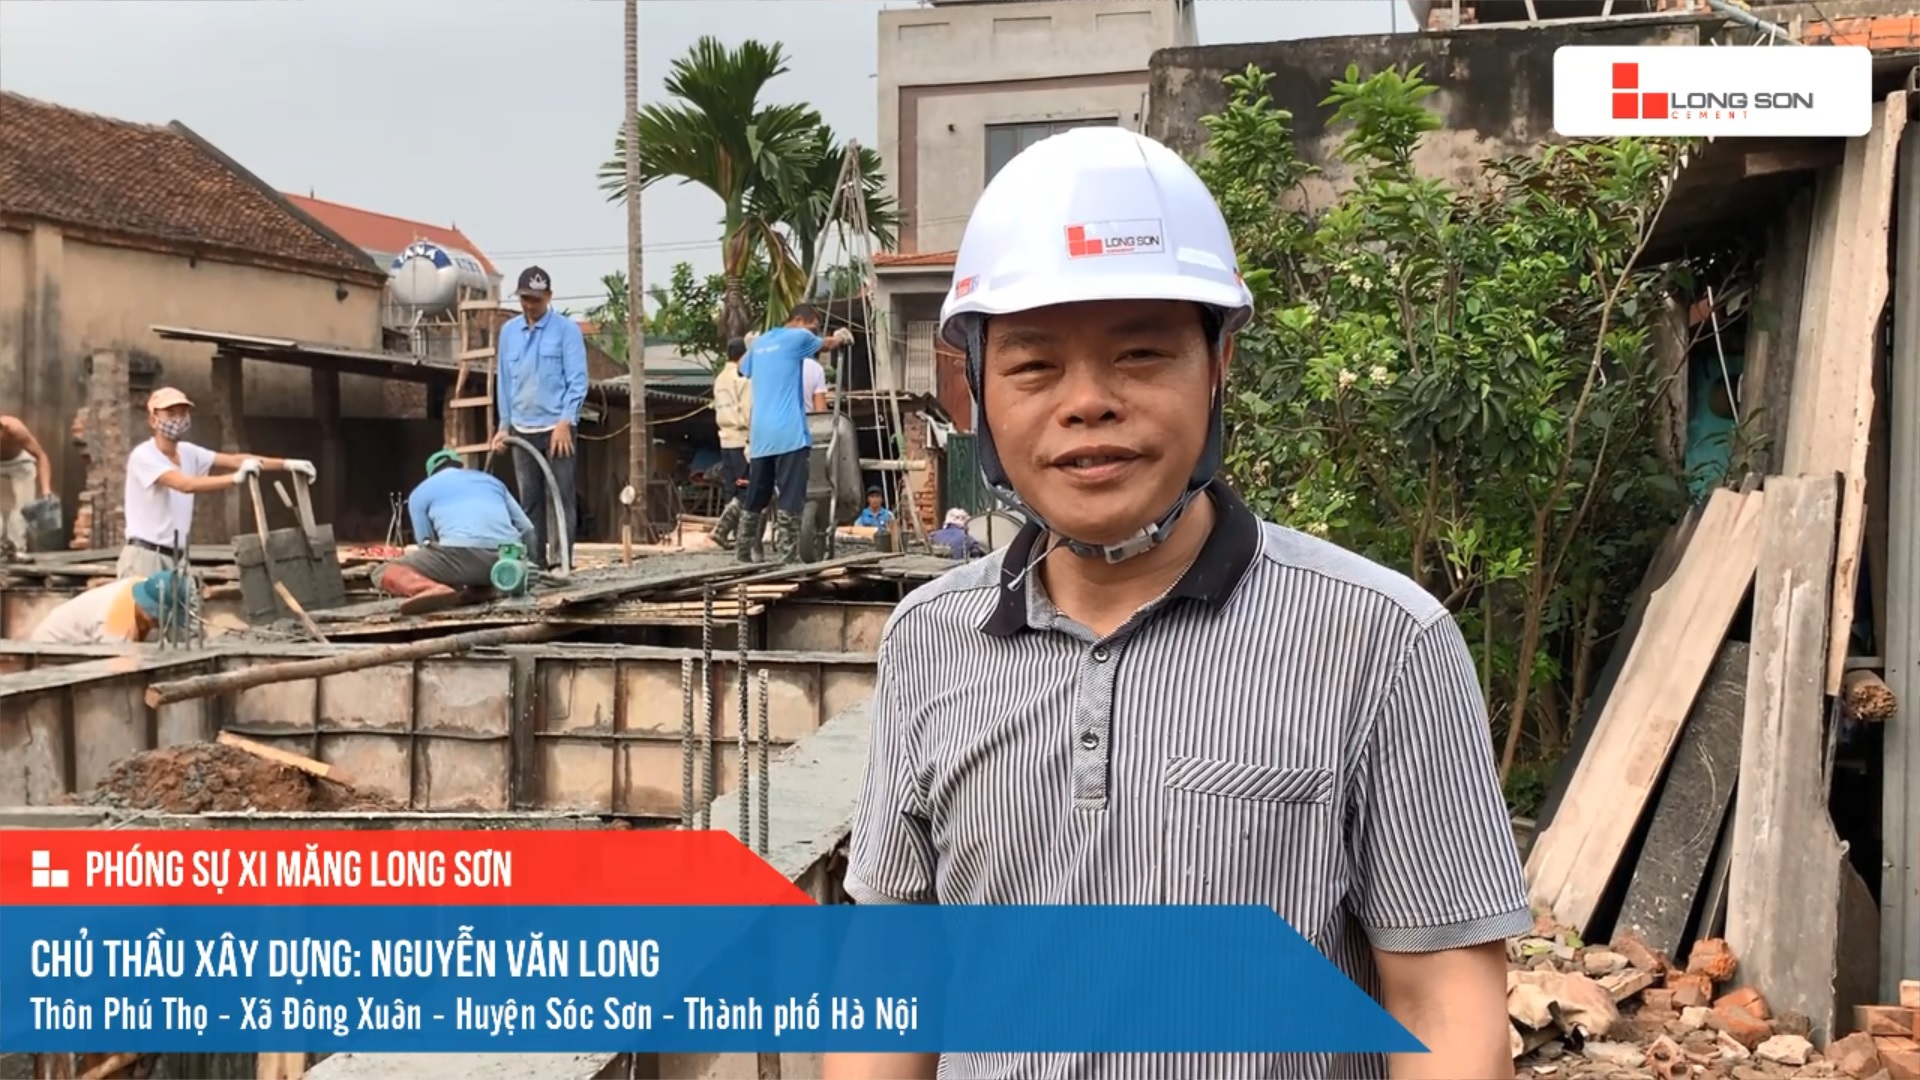 Phóng sự công trình sử dụng Xi măng Long Sơn tại Hà Nội 12.03.2021